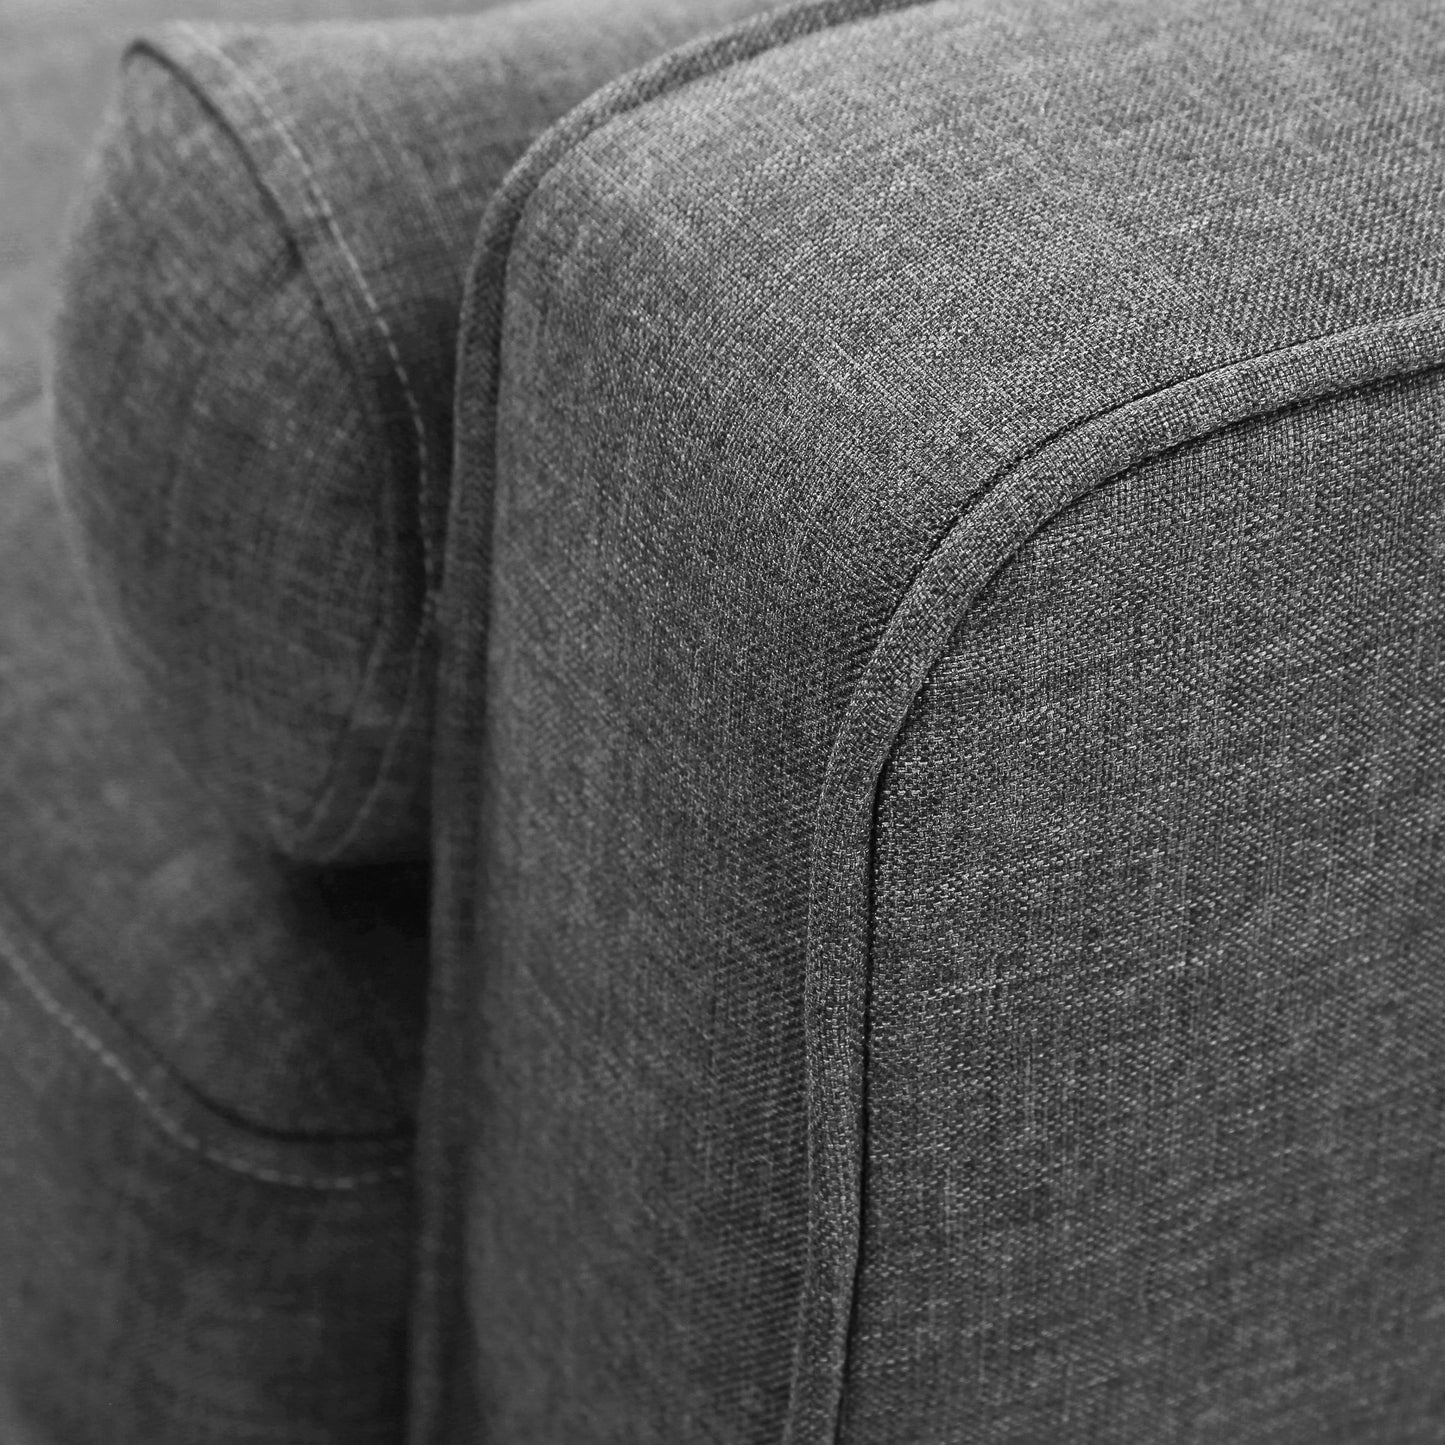 Sofa Square arms sofa